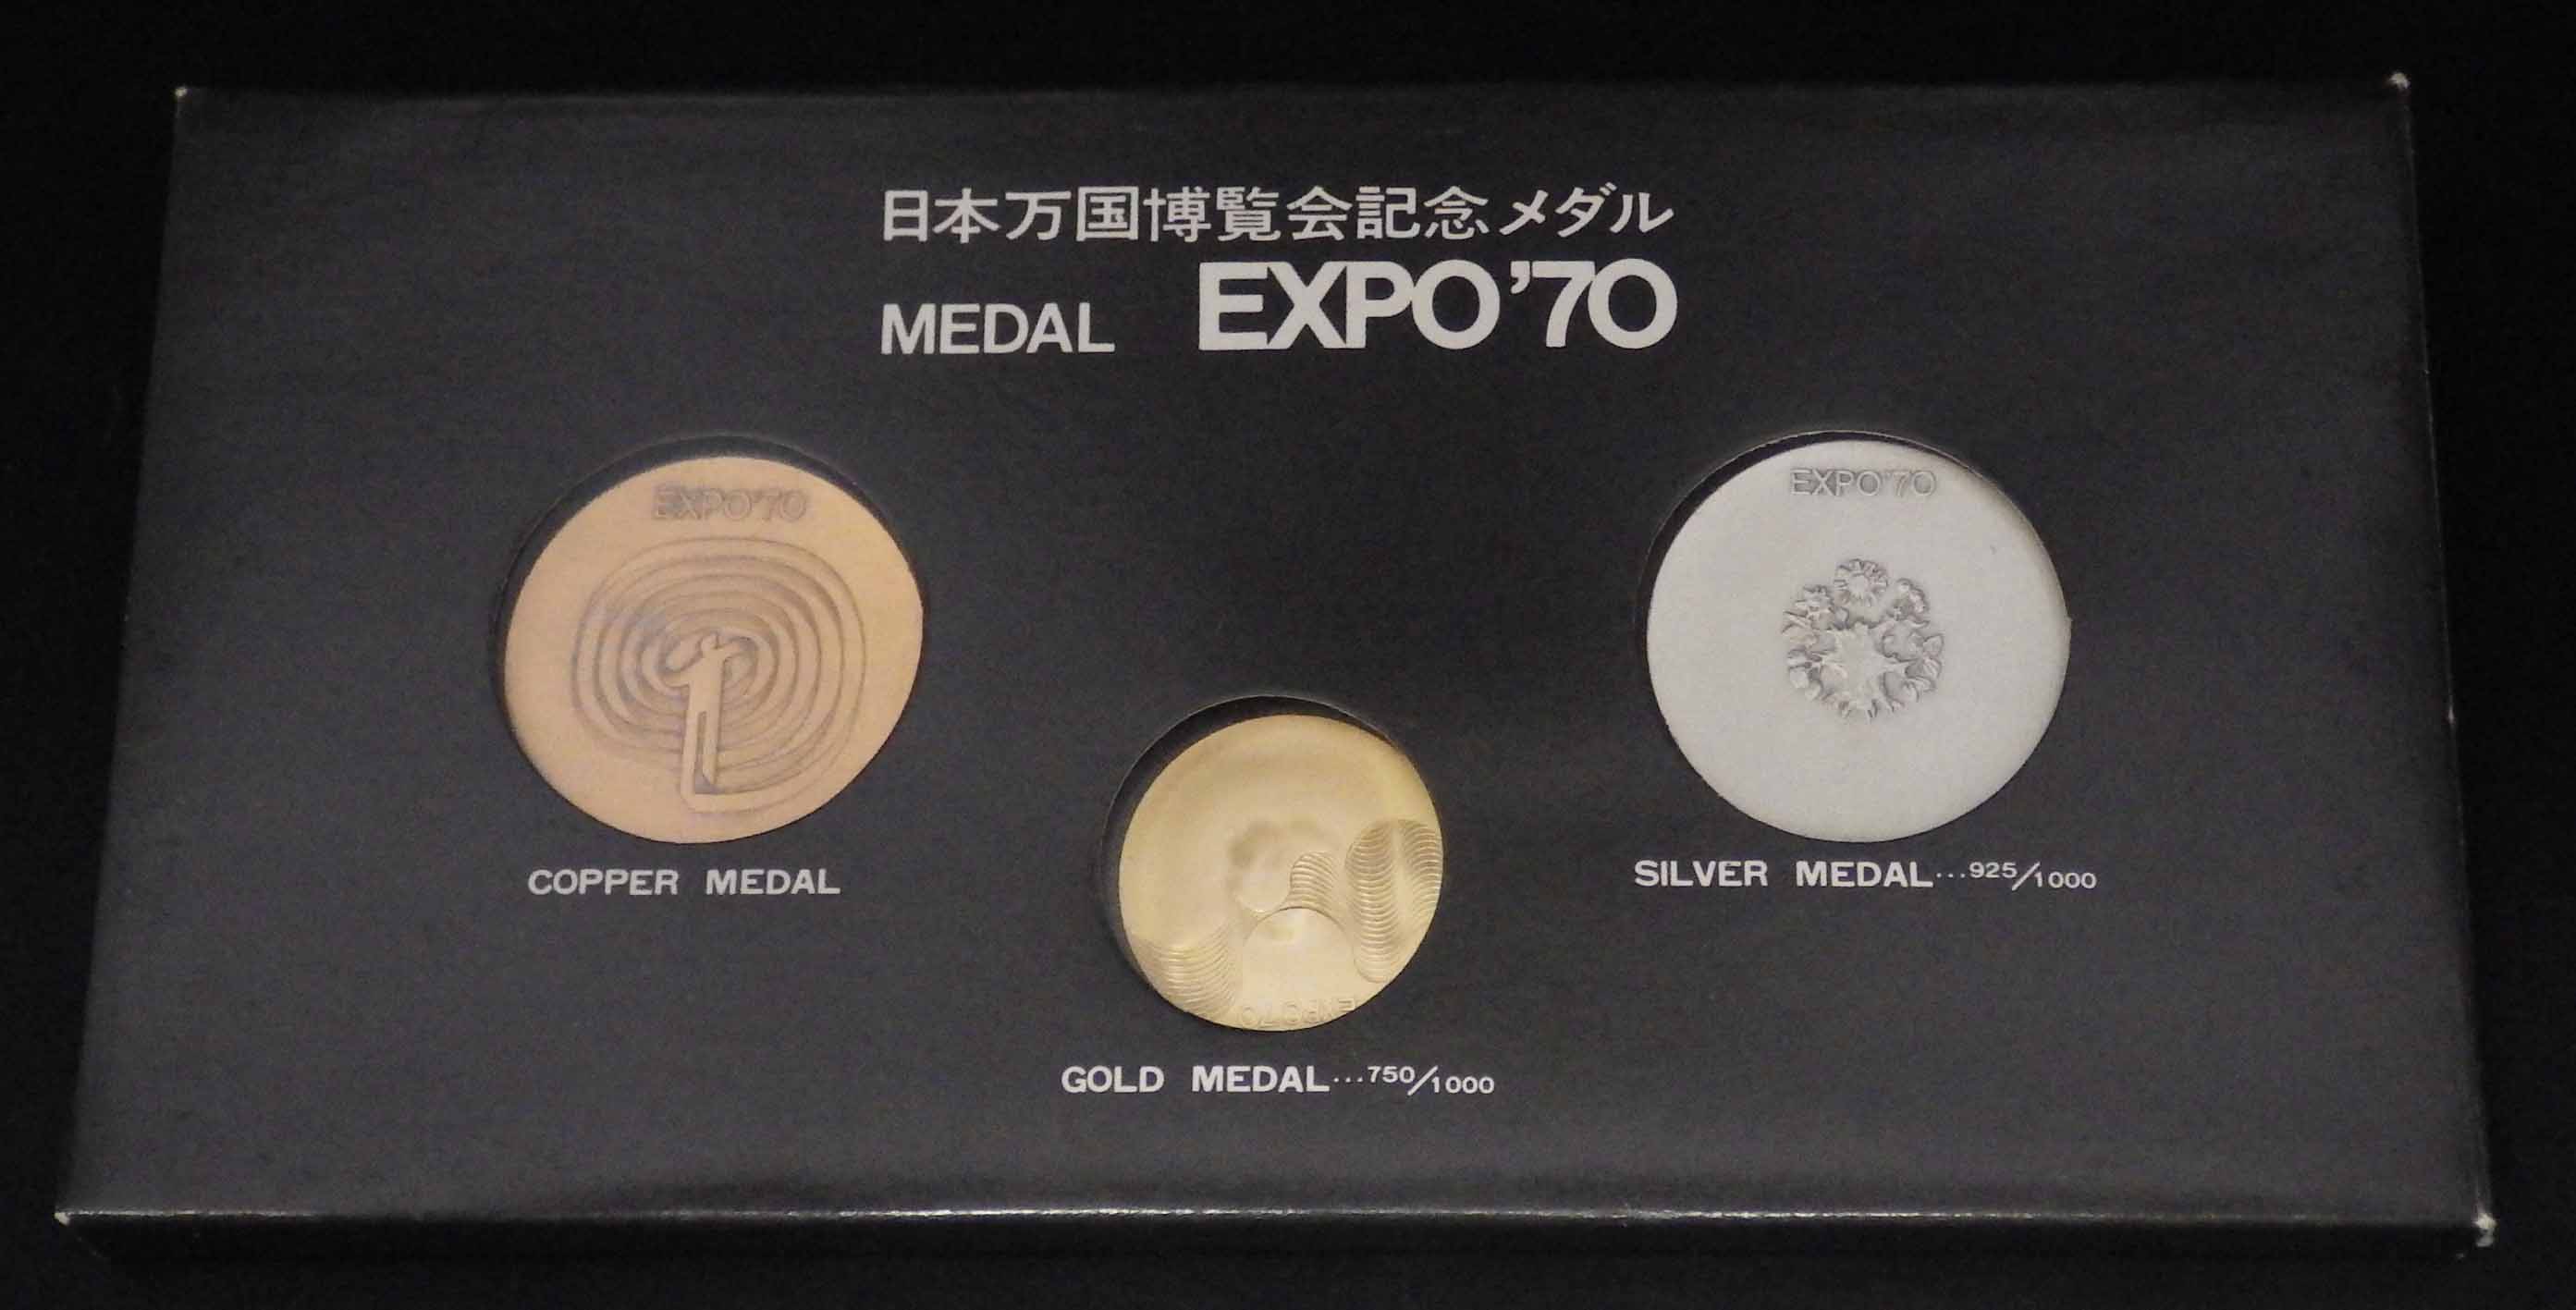 日本万国博覧会 銀メダル 大阪万博 記念メダル EXPO'70 - 雑貨